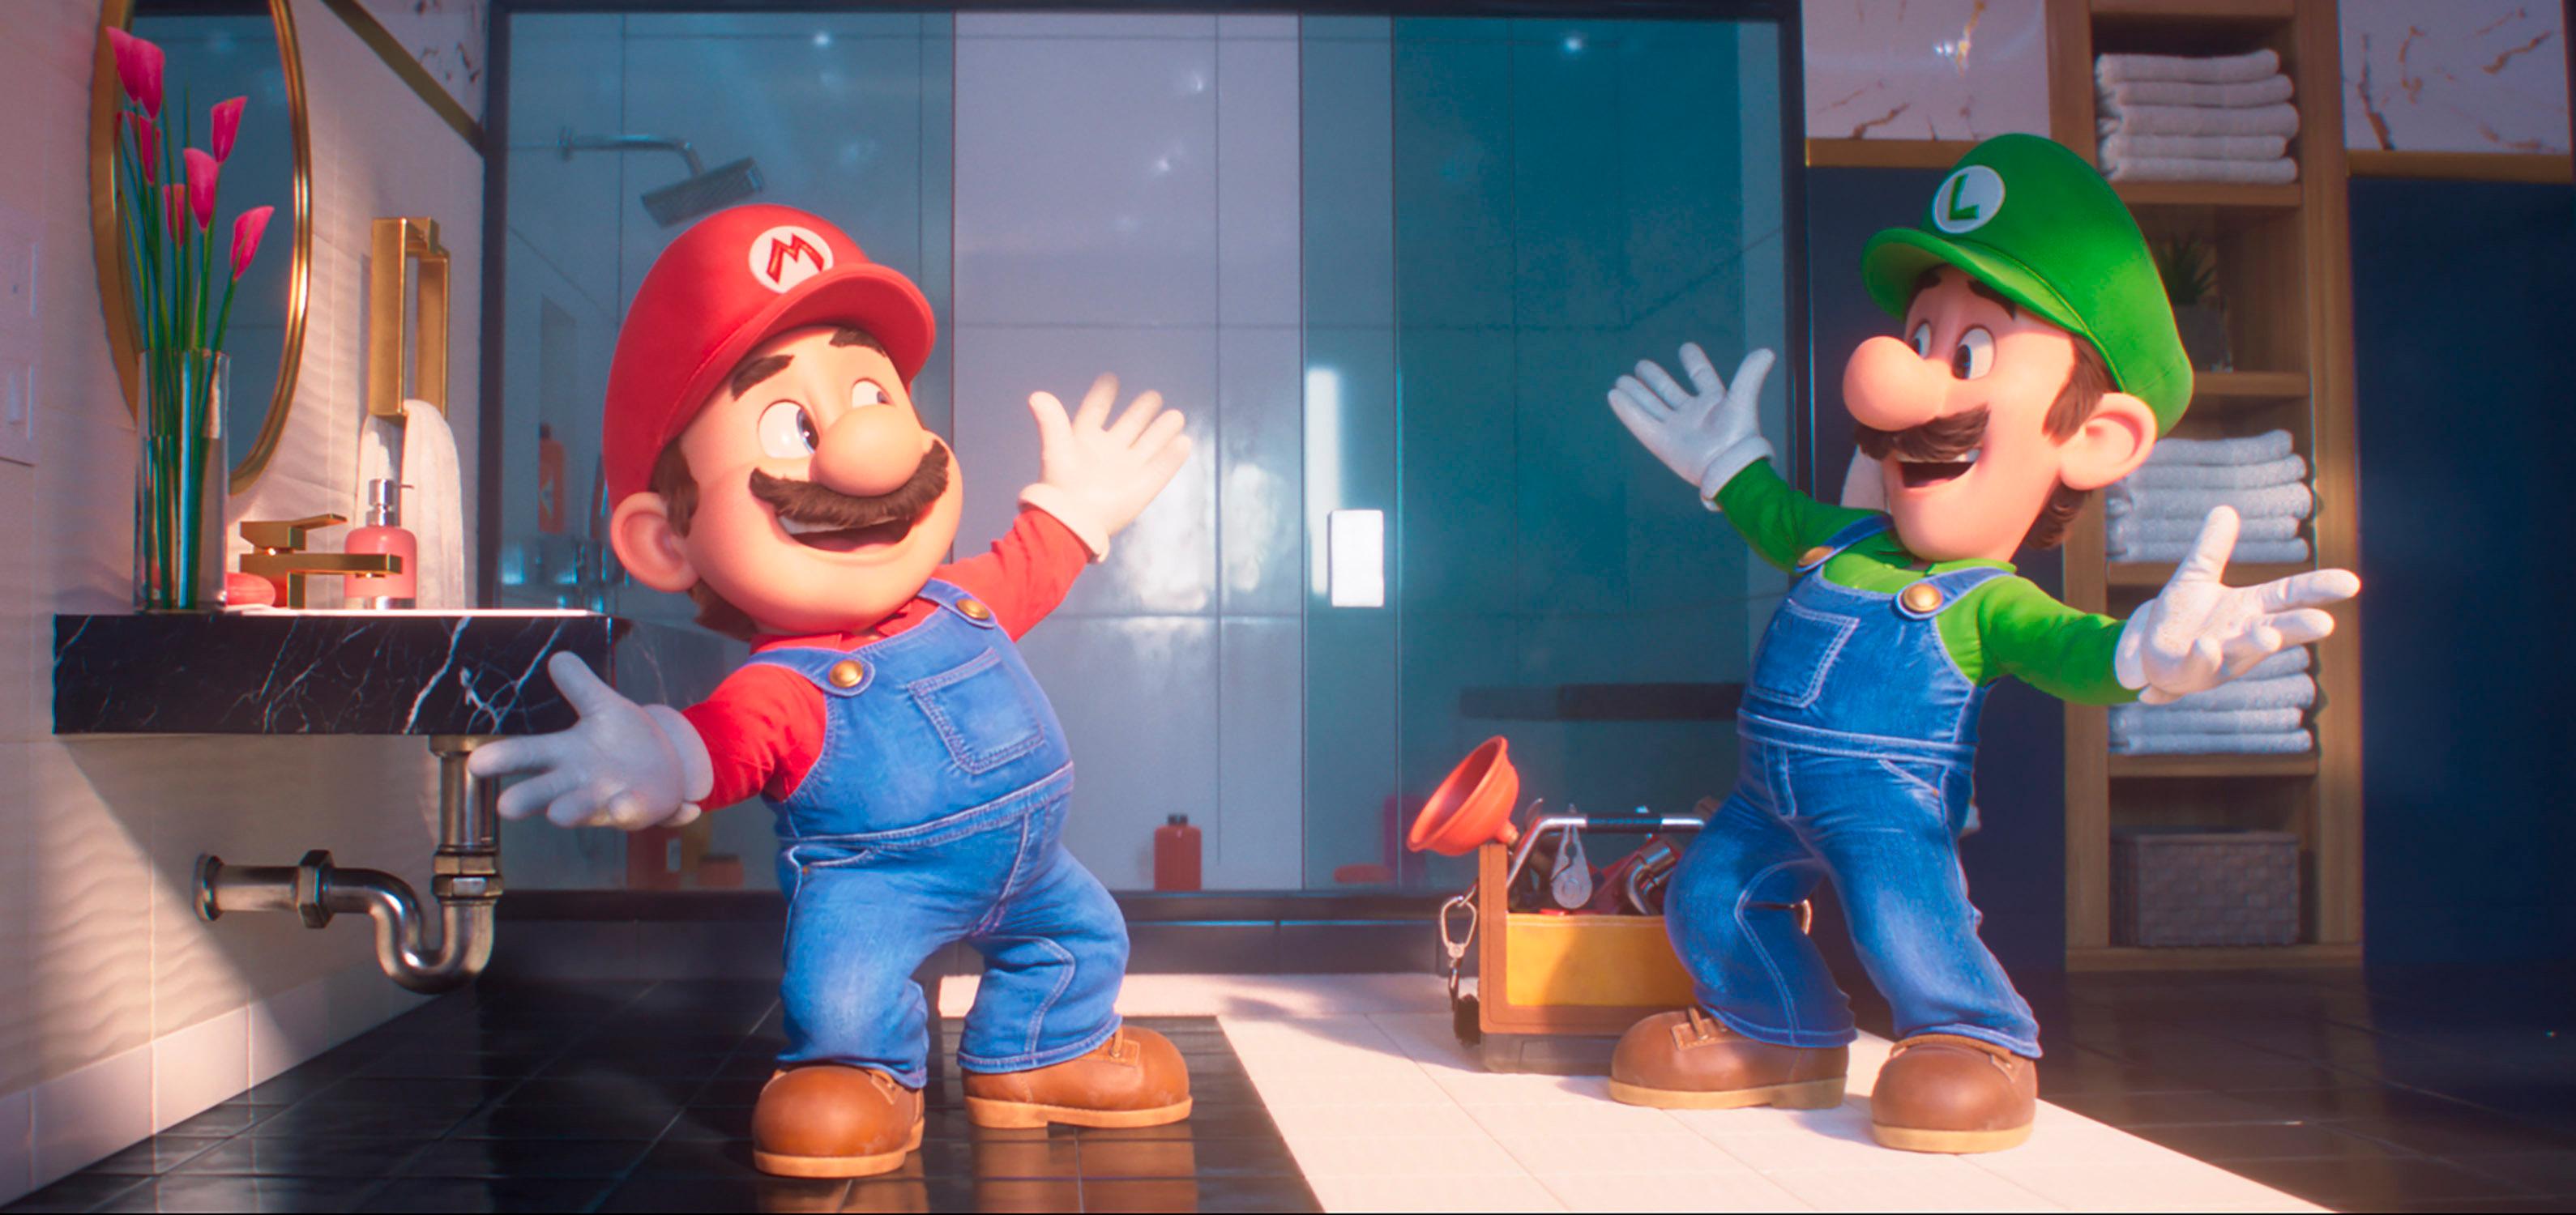 Guardiões da Galáxia 3 tira Super Mario Bros do topo da bilheteria